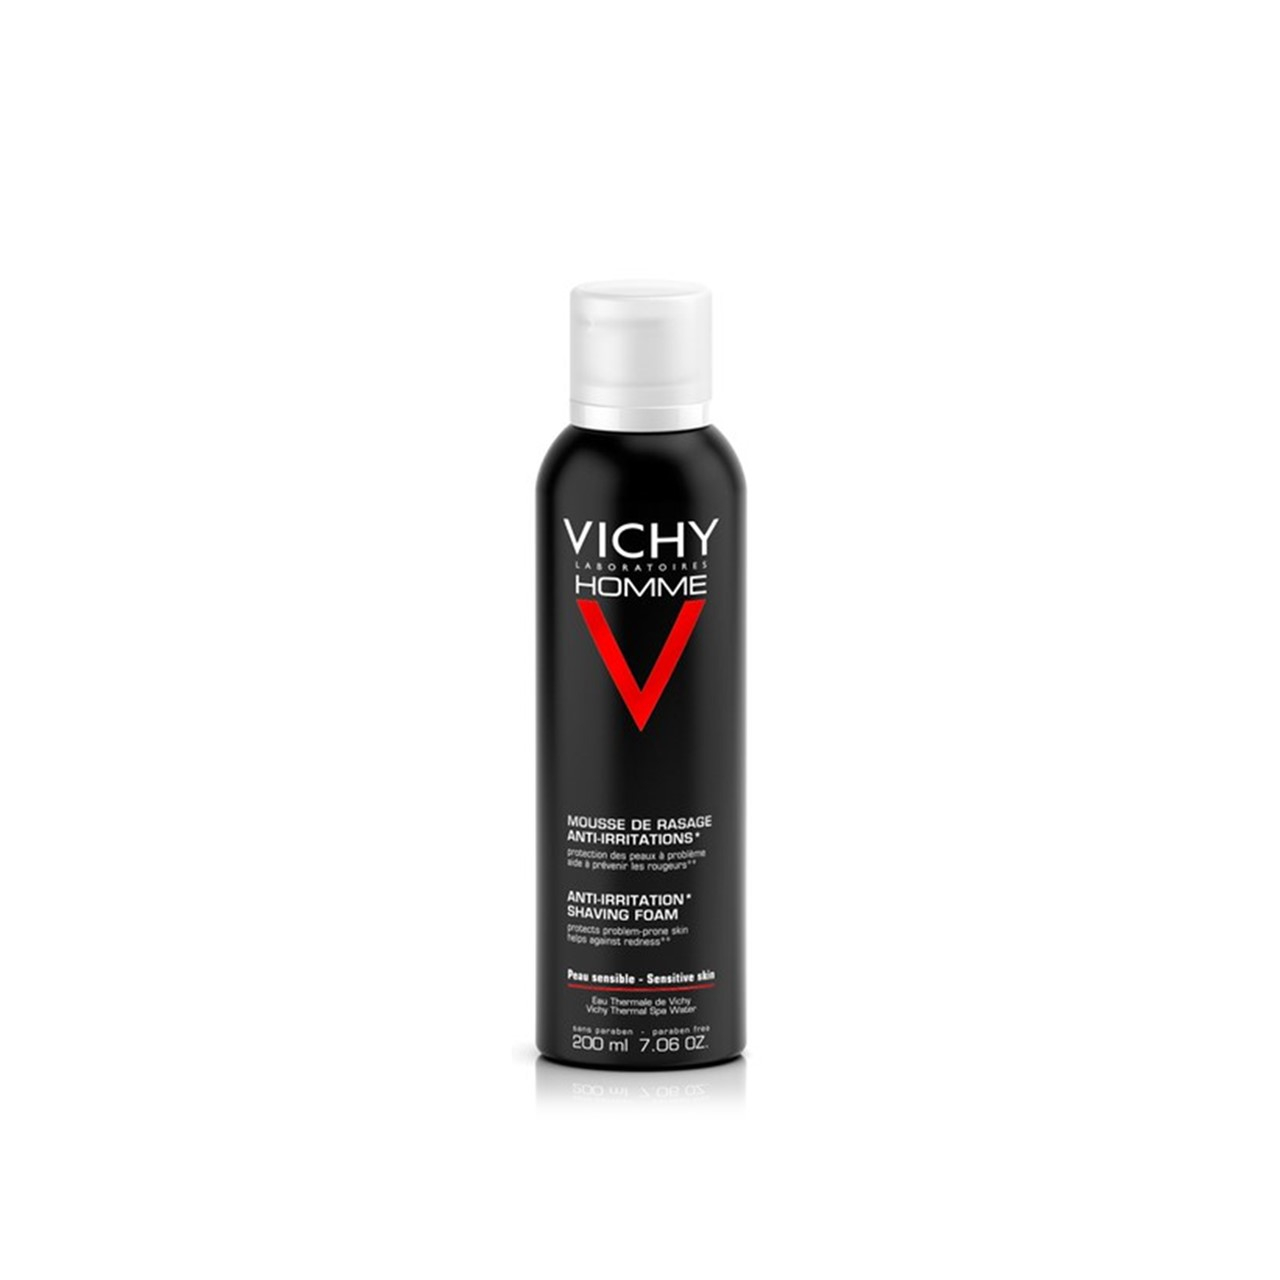 Vichy Homme Anti-Irritation Shaving Foam 200ml (6.76fl oz)